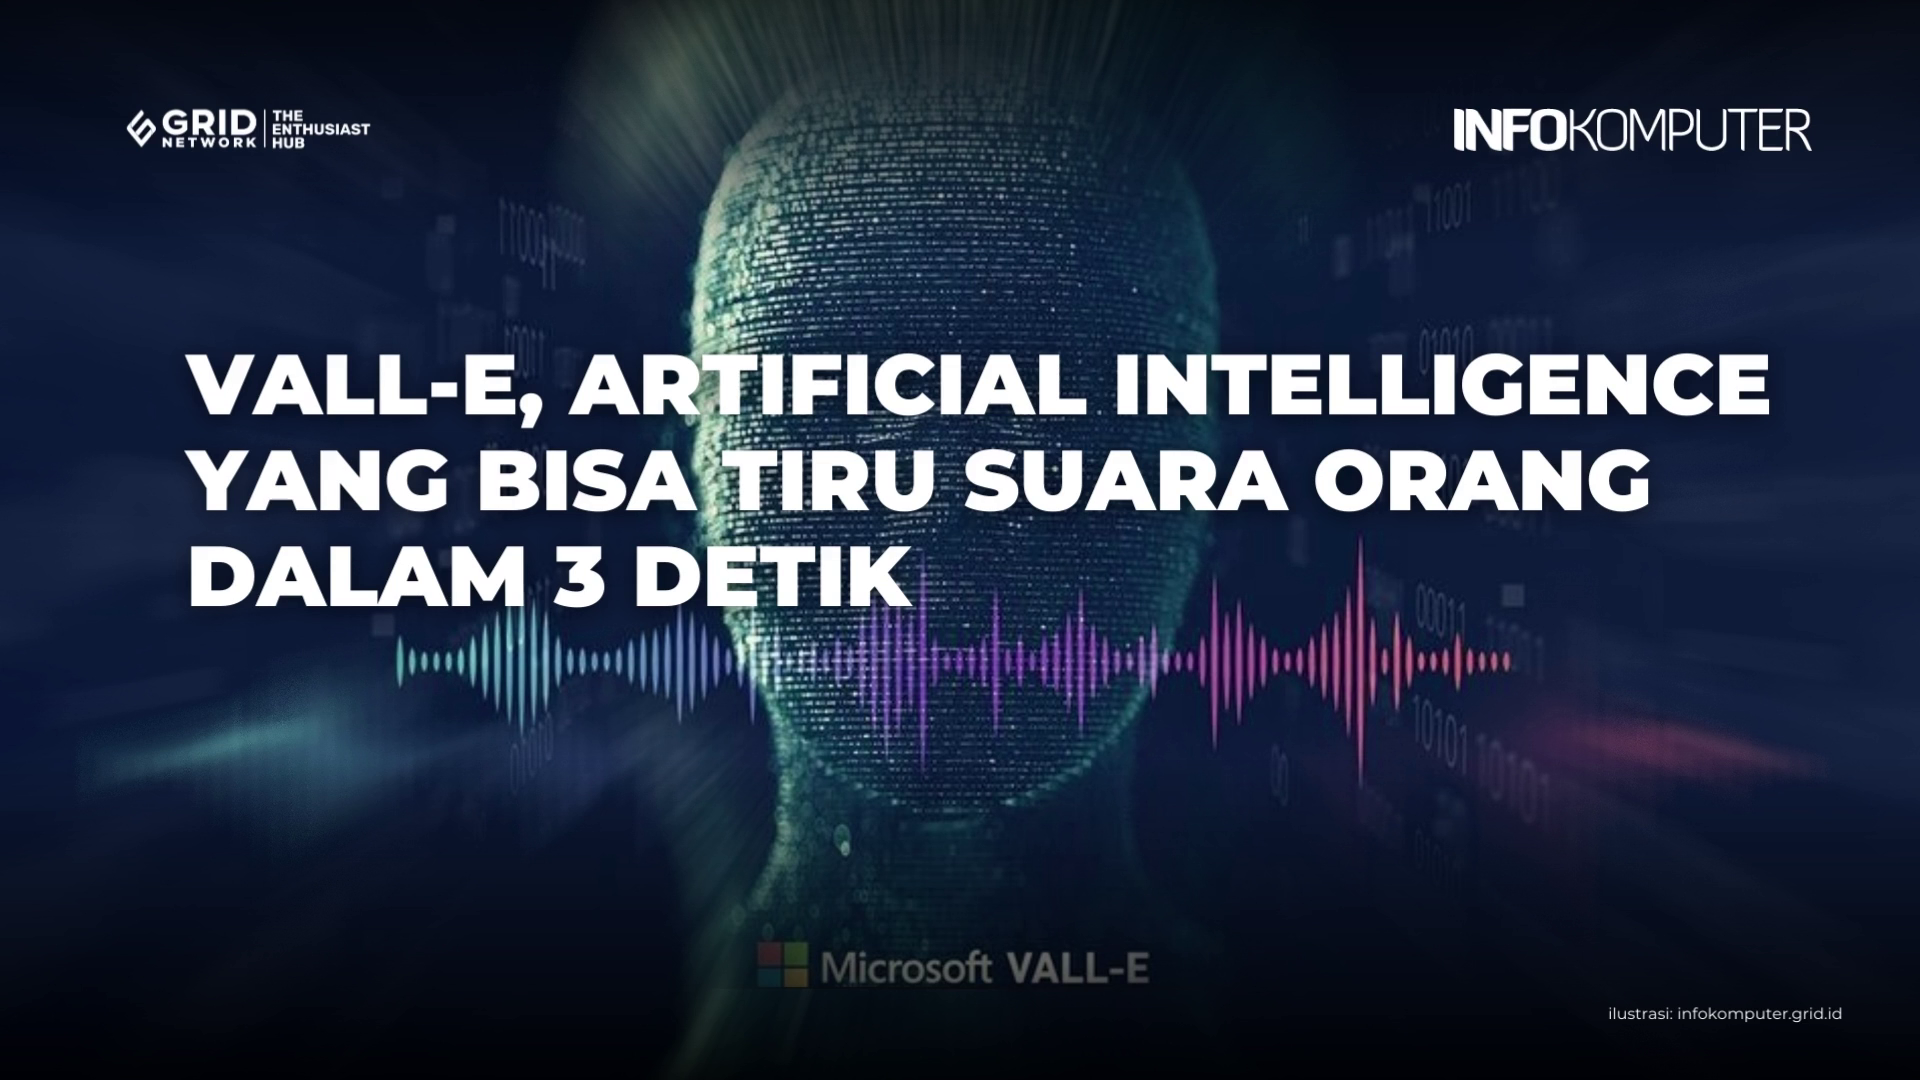 VALL-E, Artificial Intelligence yang Bisa Tiru Suara Orang dalam 3 Detik